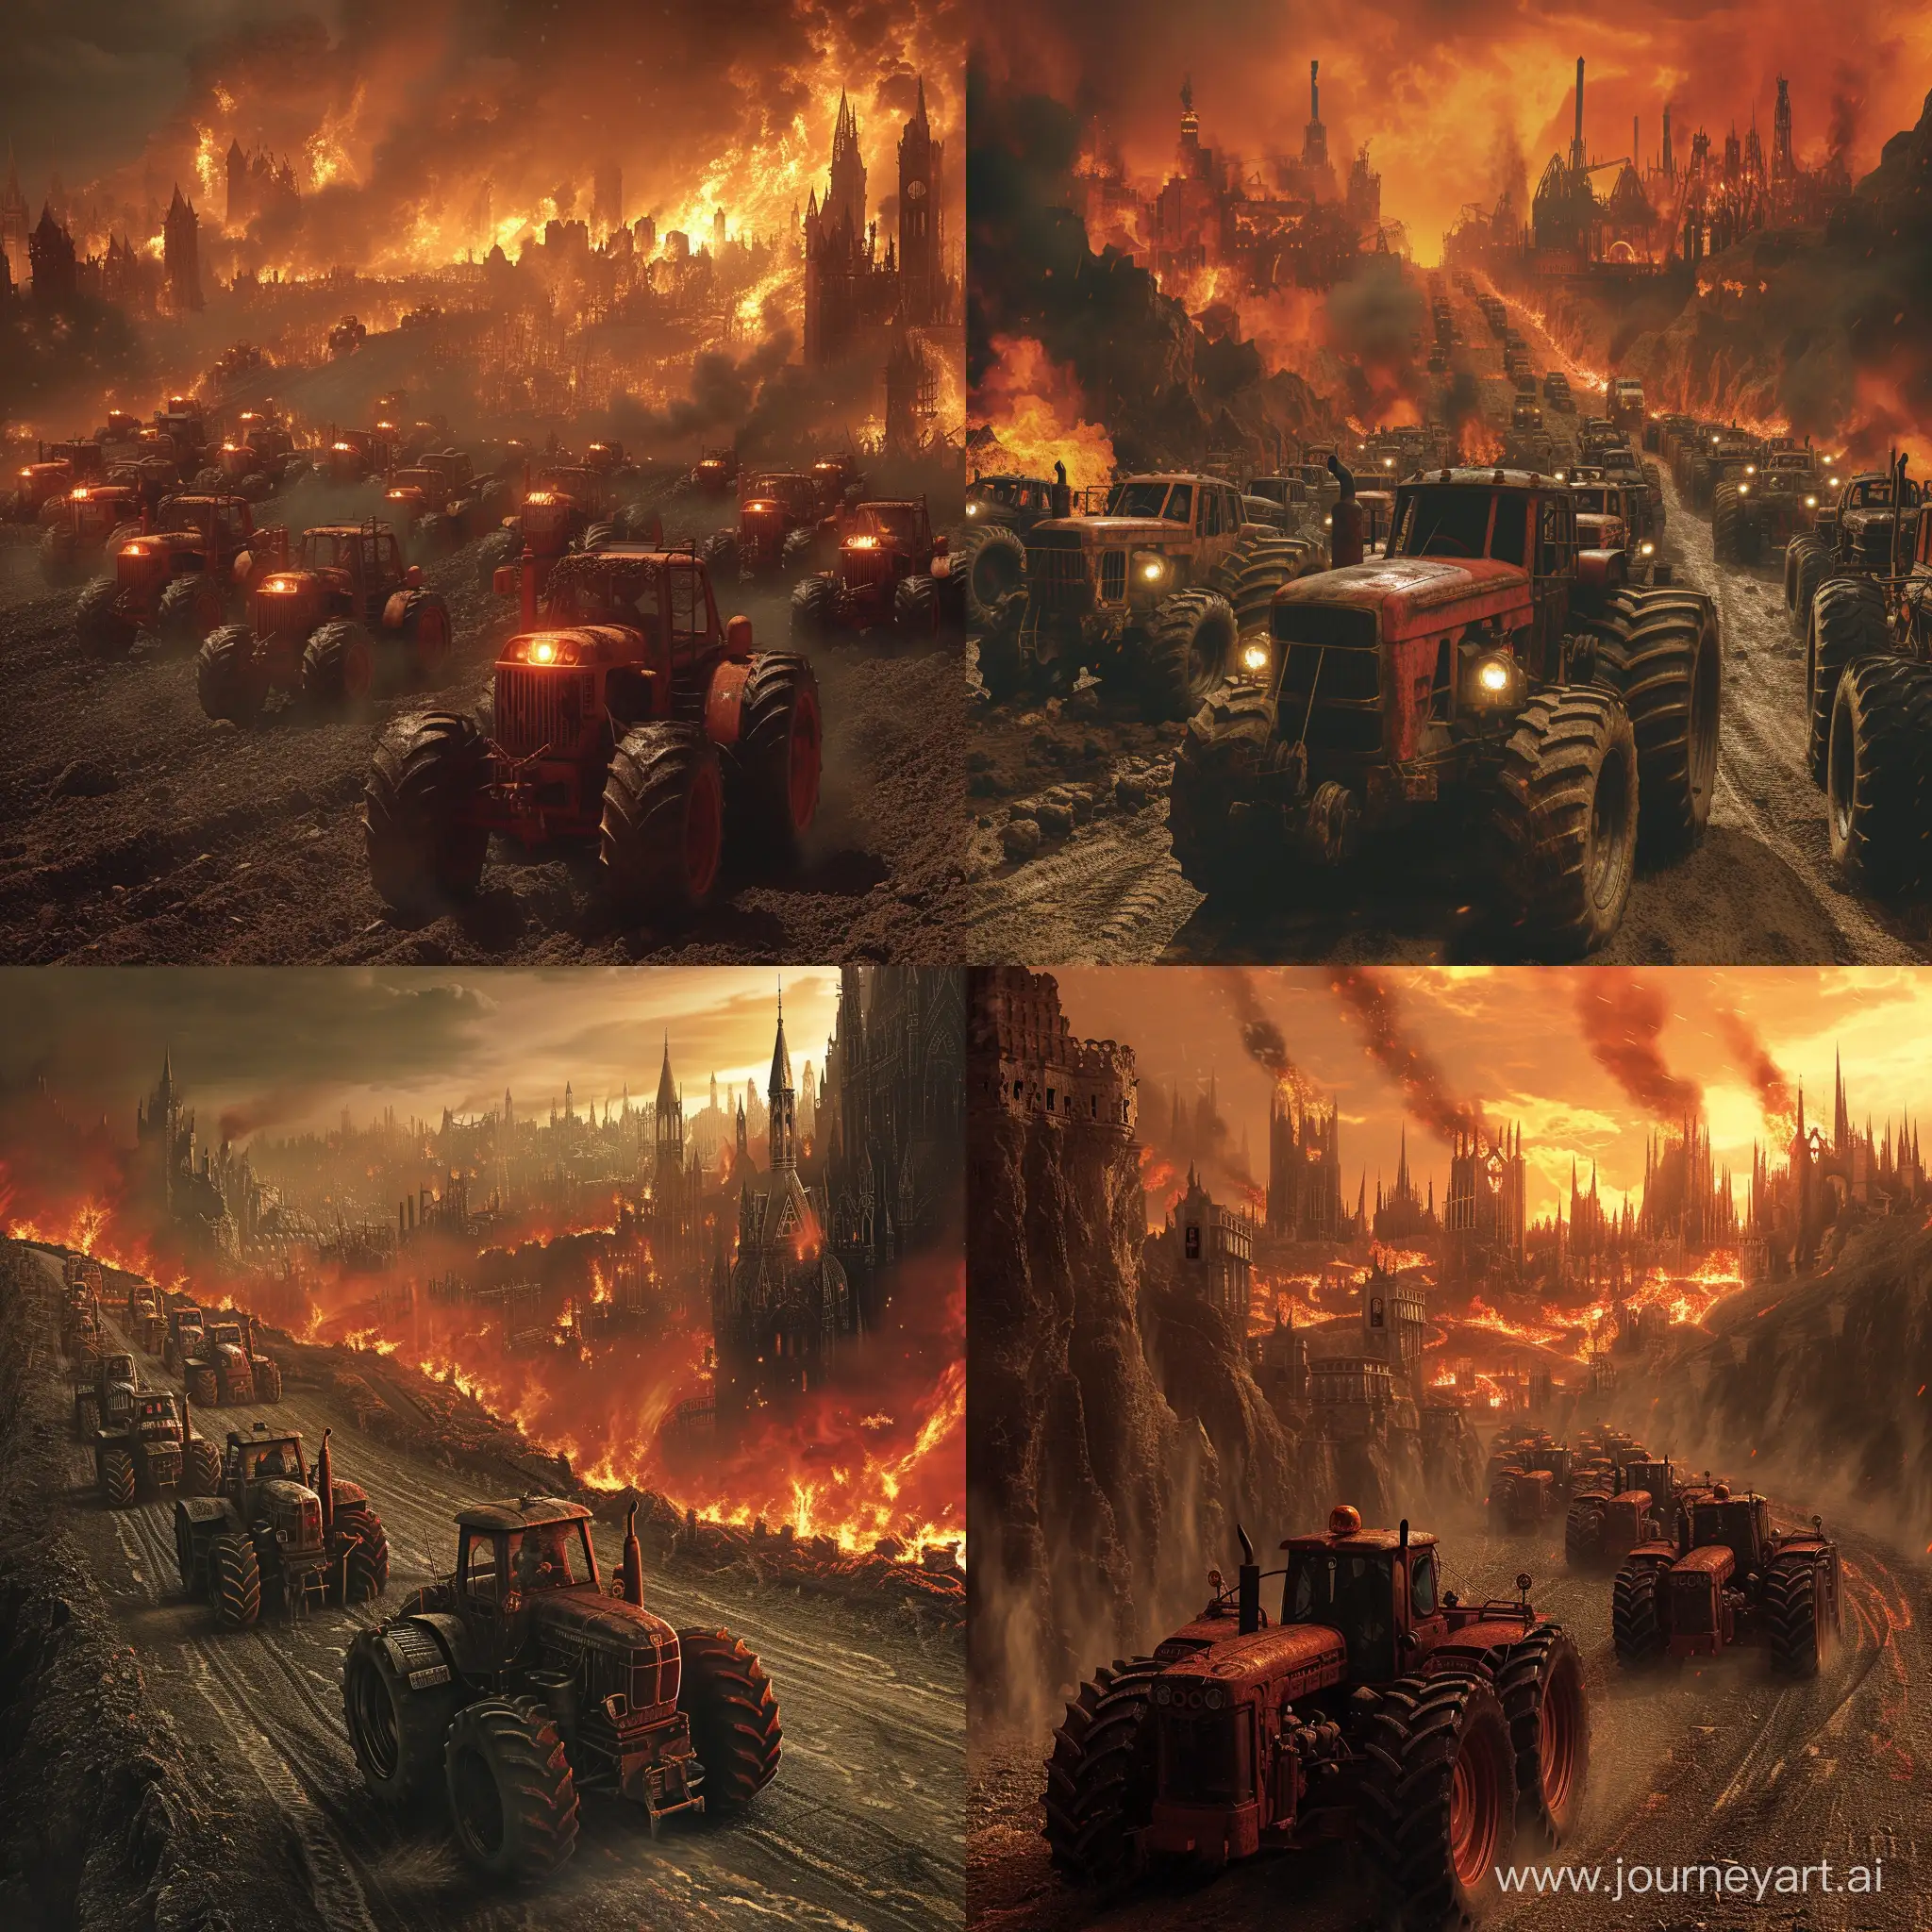 Nombreux tracteurs inspiration Mad Max, style gothique, convergent vers la ville,  arrière plan paysage en flamme, style cinematic